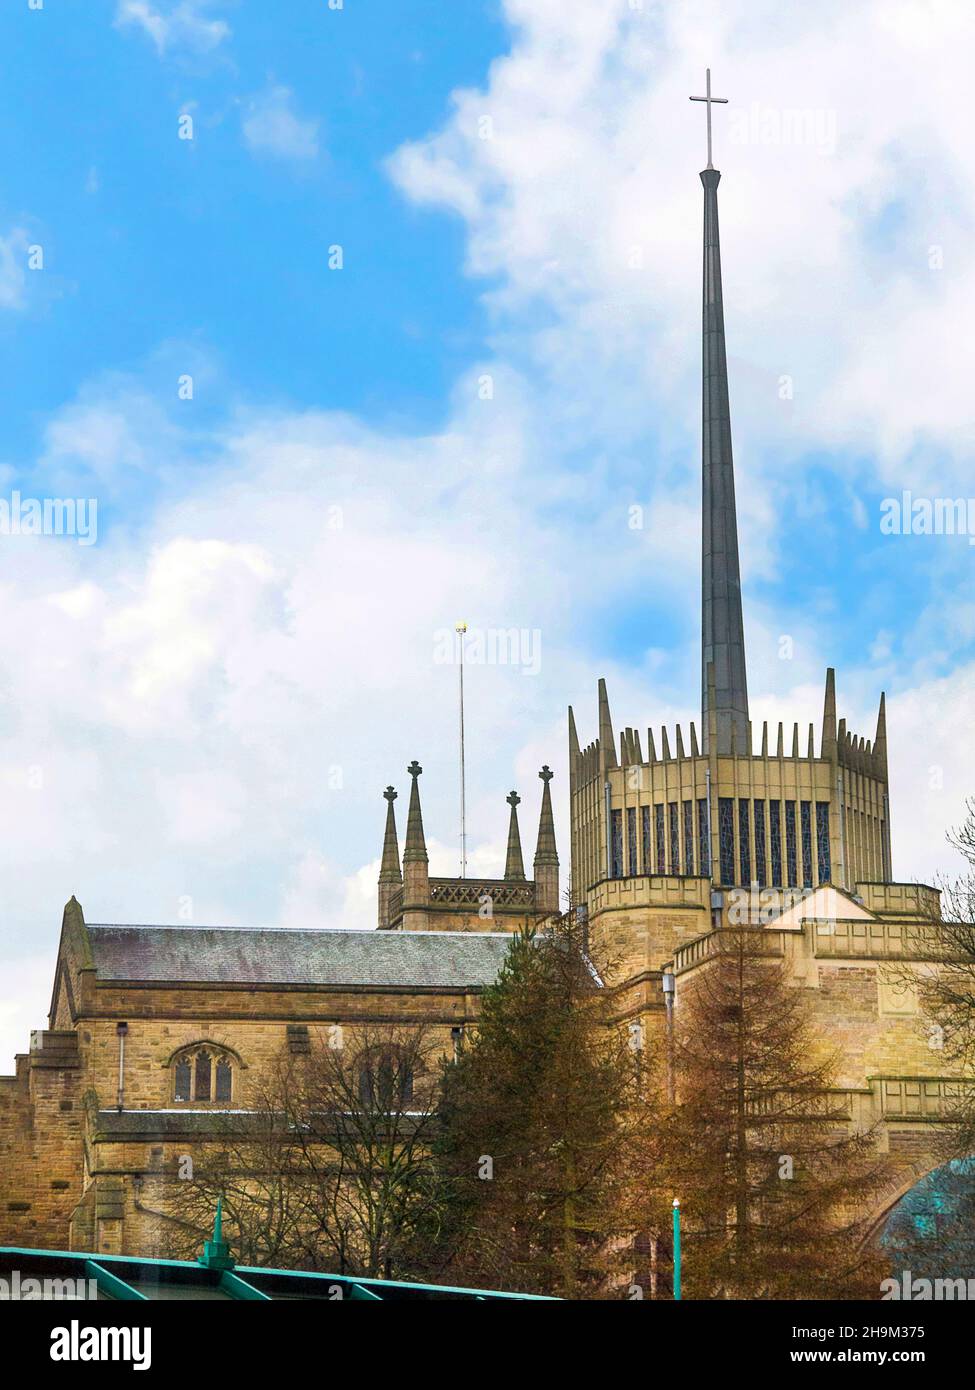 La Cathédrale de Blackburn est un des plus nouvelles cathédrales, pourtant, c'est l'un des plus anciens lieux de culte chrétien à Blackburn, Royaume-Uni. Banque D'Images